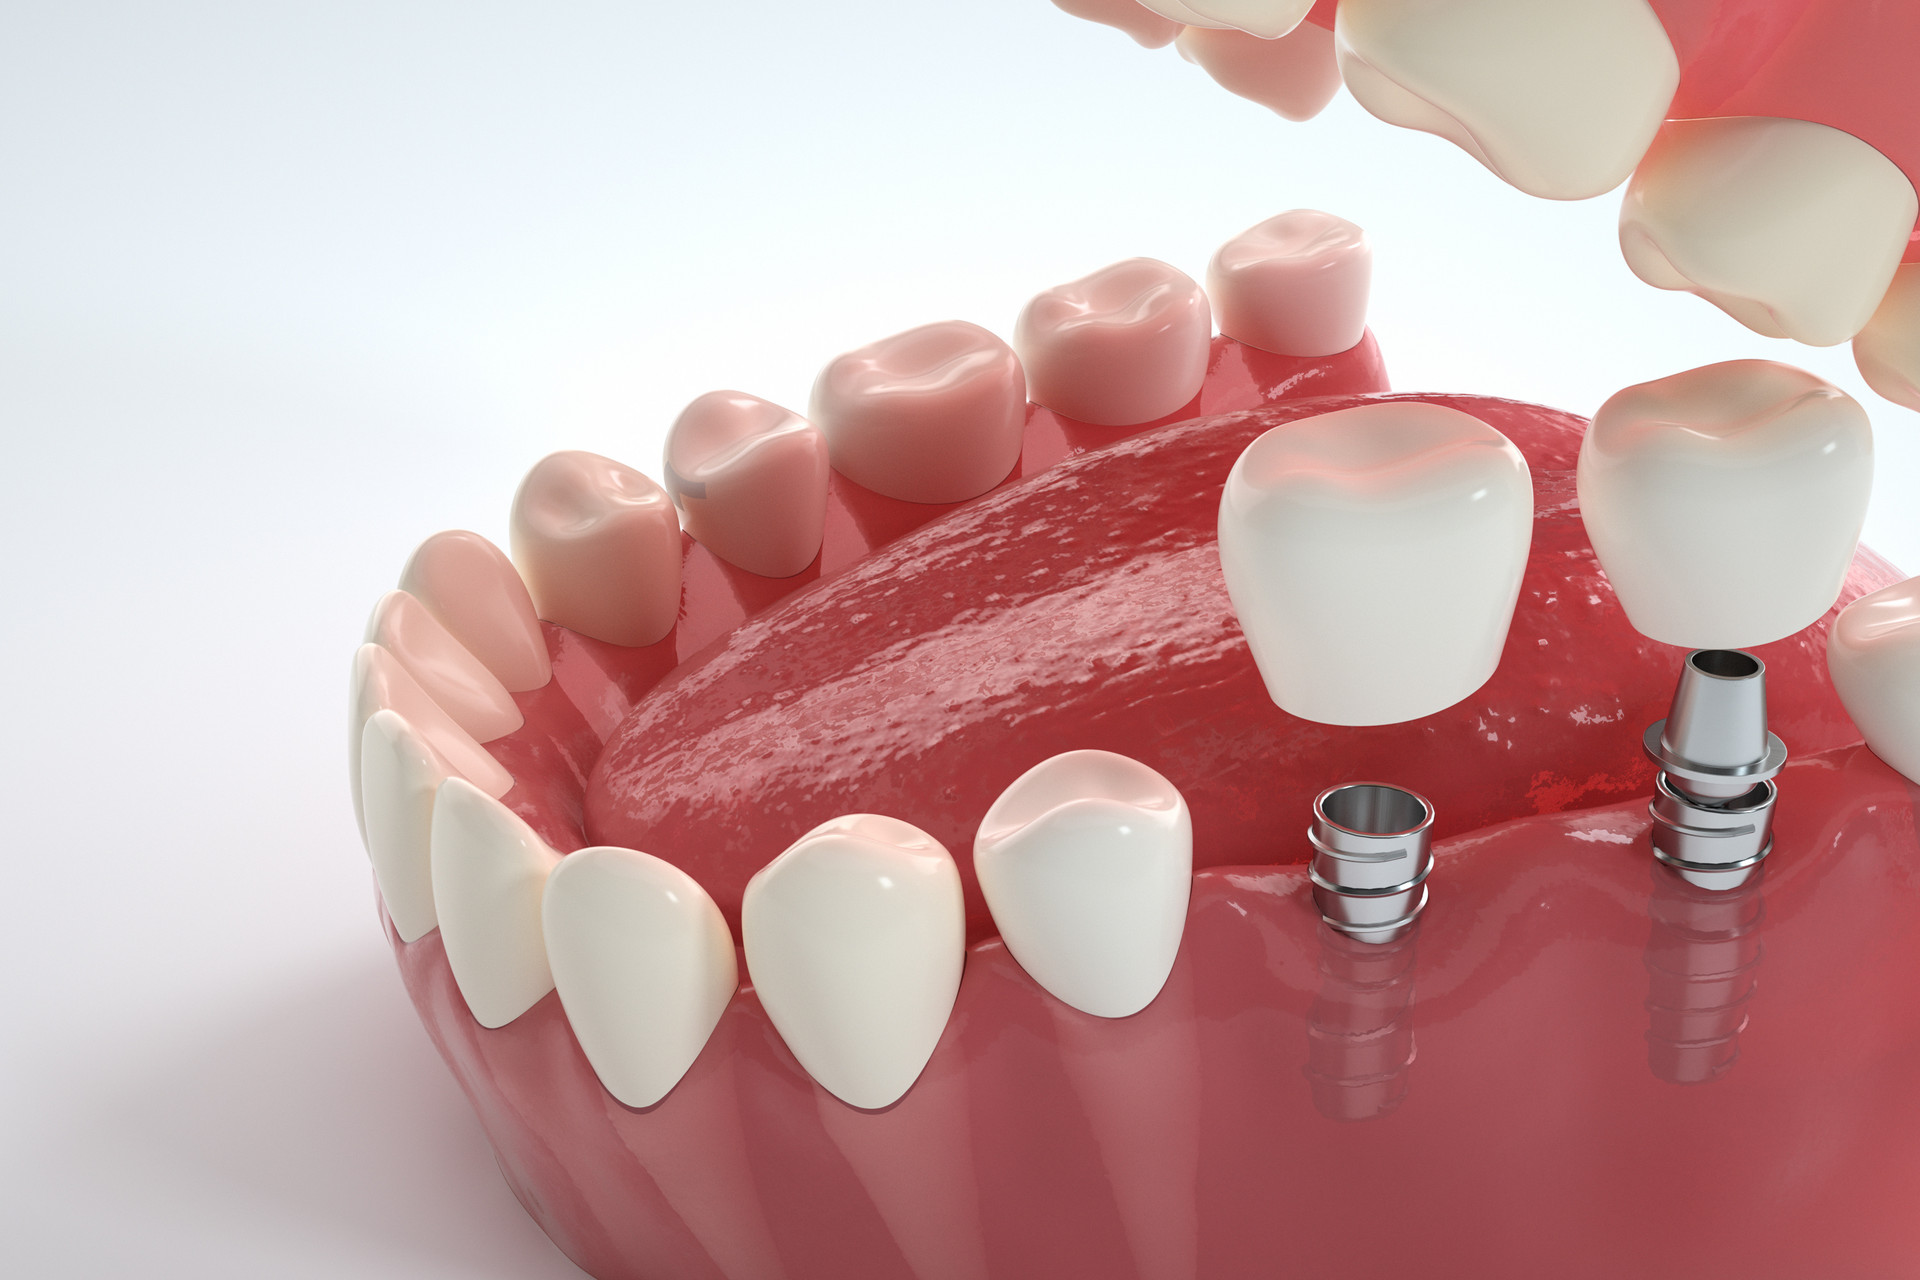 Clin Oral Implants Res：辅助<font color="red">性</font>全身应用抗生素是否可有效治疗种植<font color="red">体</font>周围<font color="red">炎</font>？